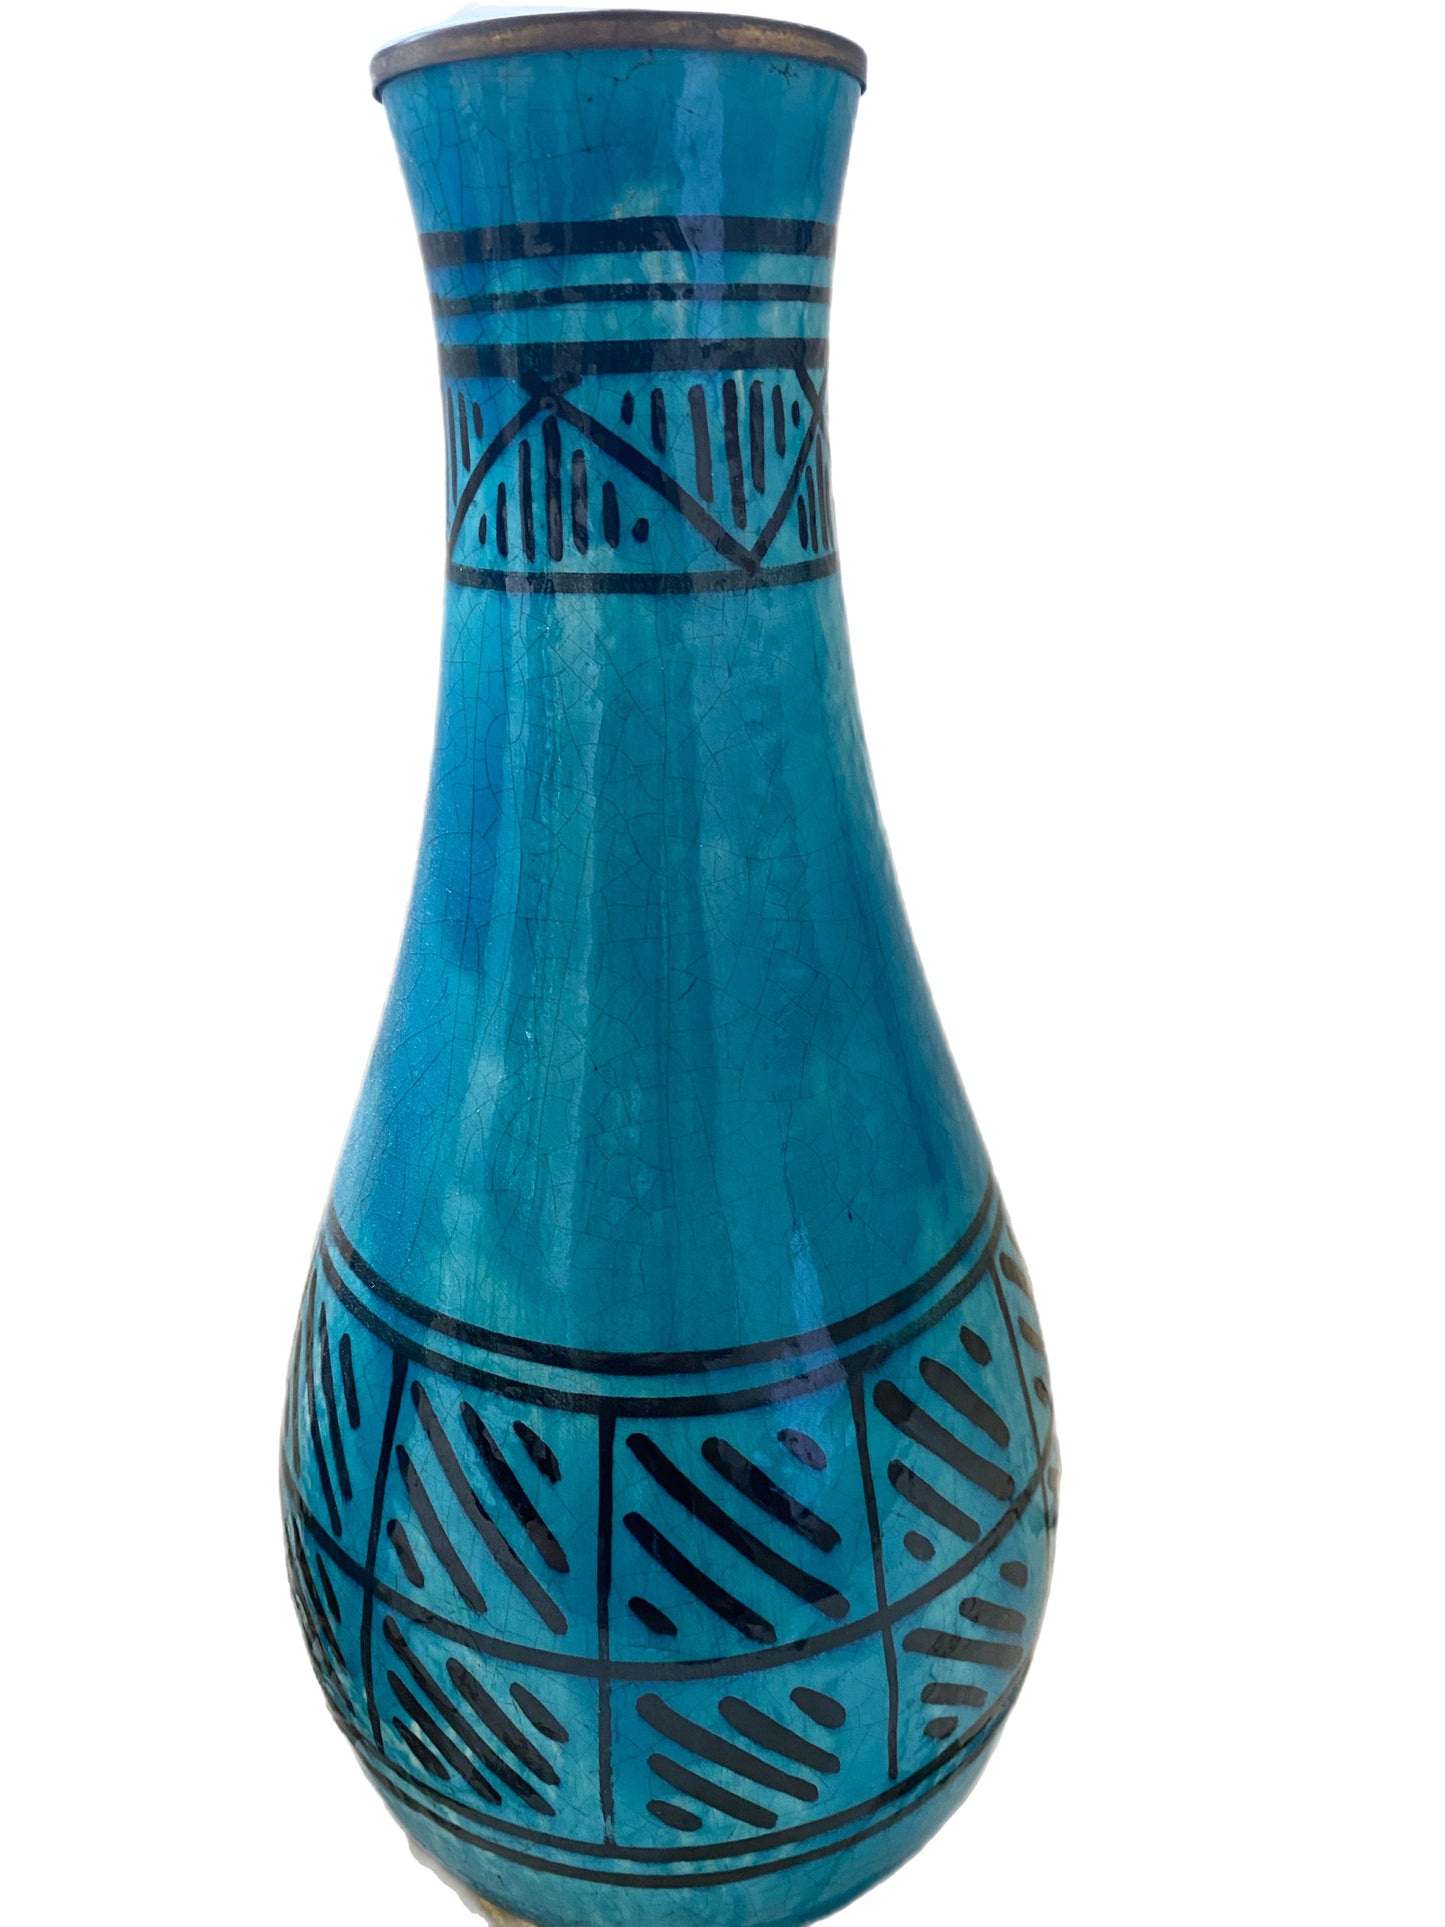 Pair of Turquoise Blue Ceramic Lamp